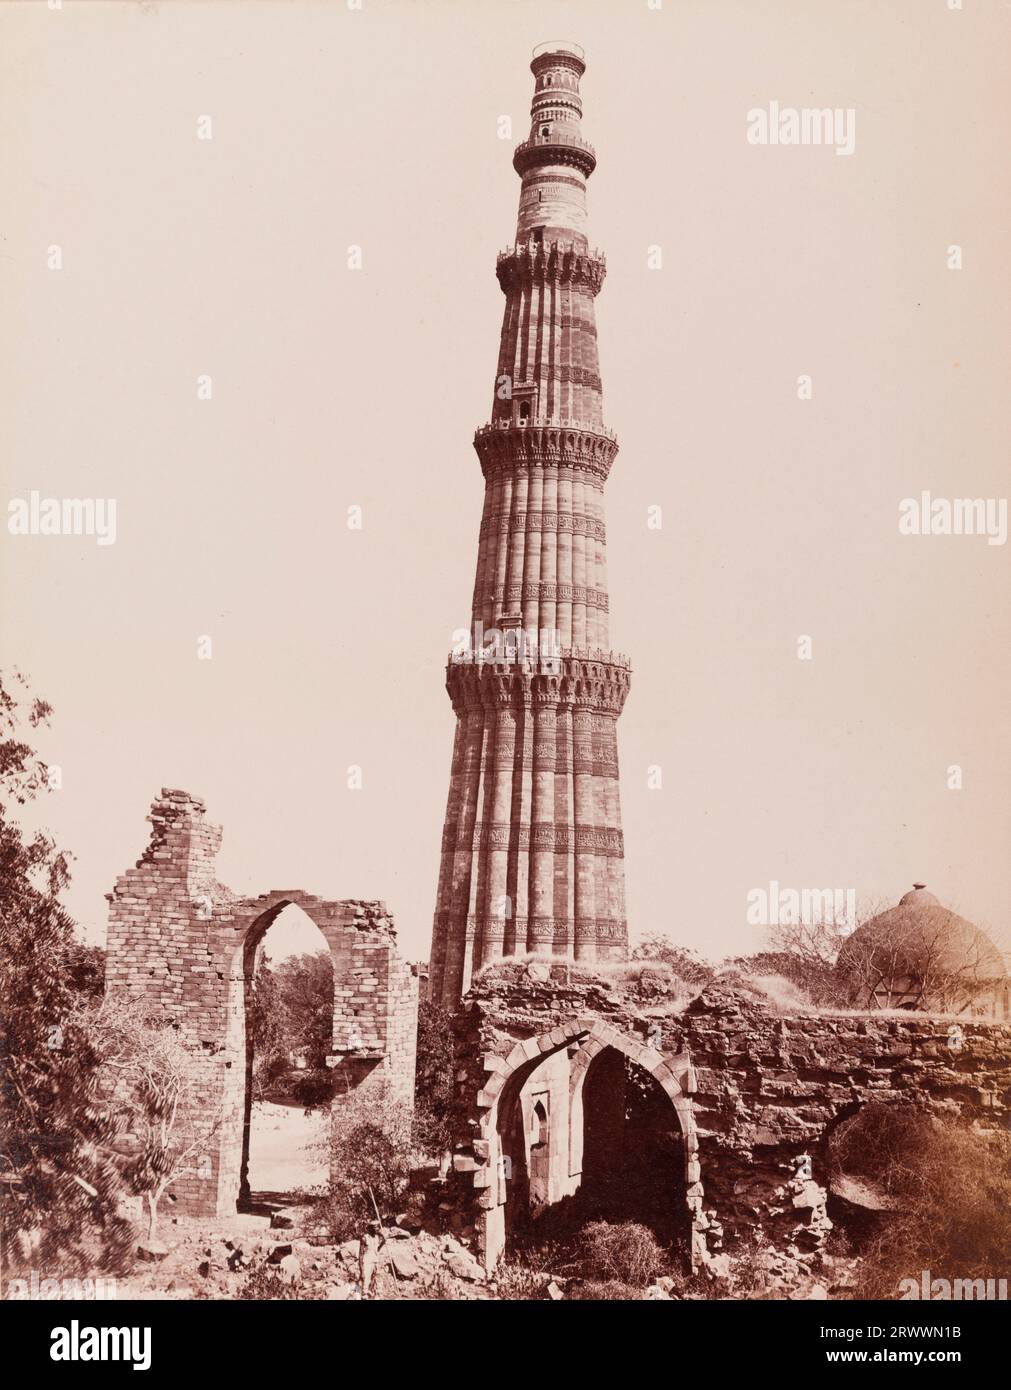 Blick auf den Qutub Minar. Mit einer Höhe von 72,5 Metern wurde dieser als feierlicher Siegesturm zur Begleitung der Quwwat-ul-Islam-Moschee errichtet. Es ist umgeben von Ruinen und einer kleinen Kuppelstruktur. Auf negativ eingeschrieben: Frith's Series. 1251 Kutub Minar. Der Titel lautet: The Kutub Minar, Delhi. Stockfoto